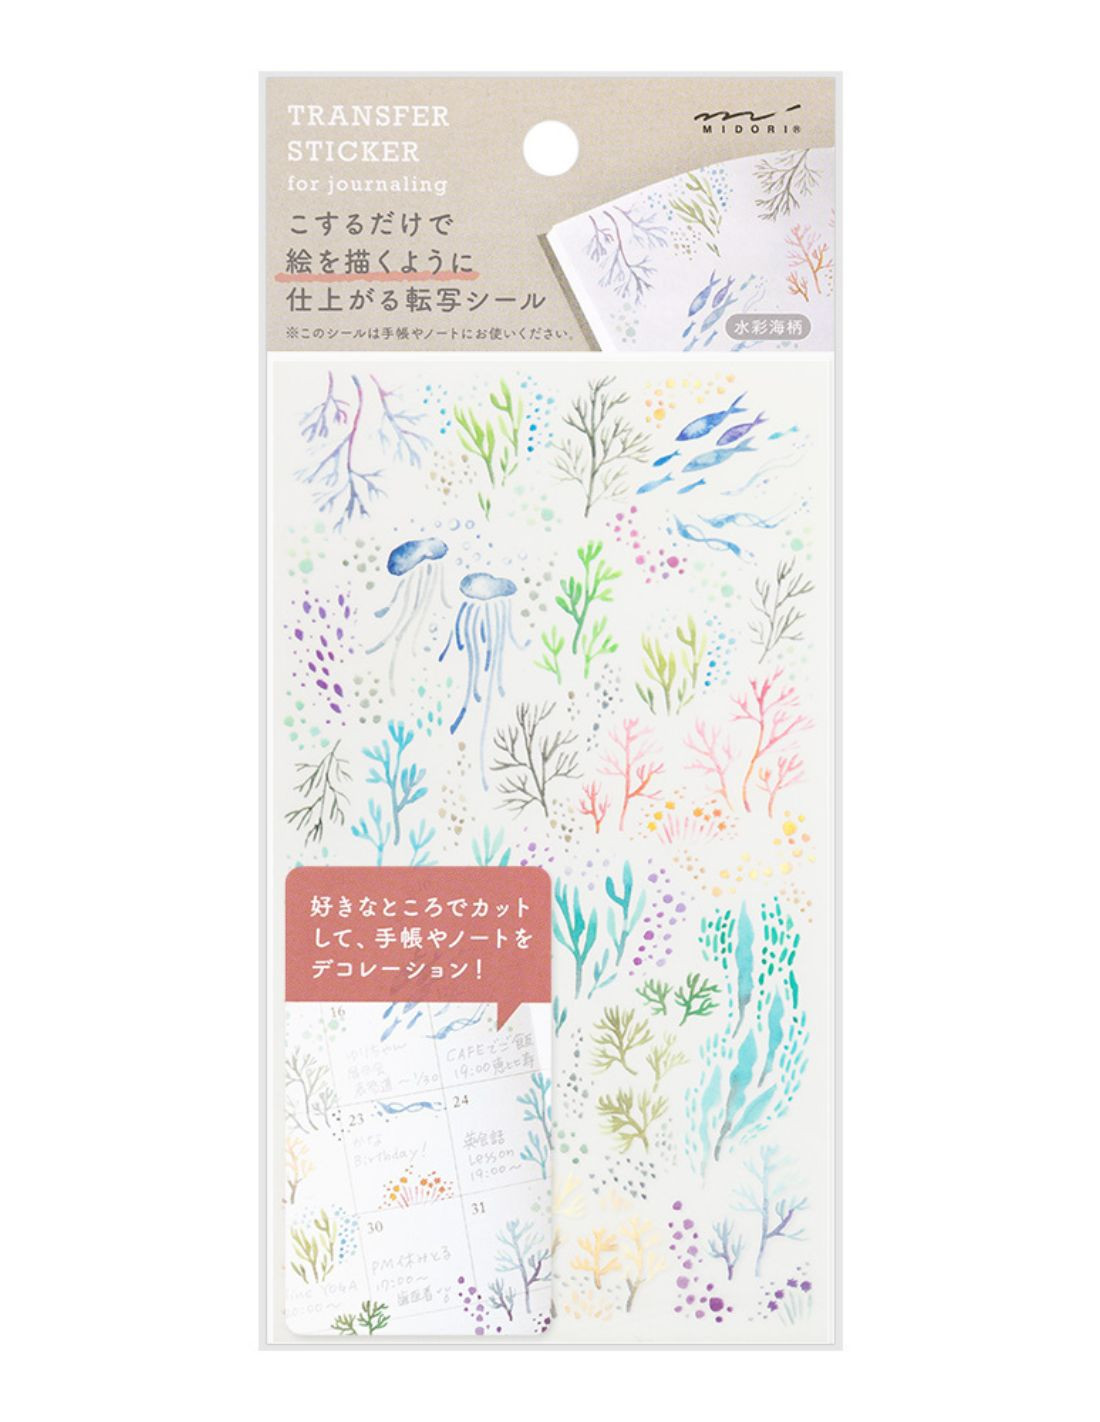 Midori Transfer Stickers - Watercolor Sea